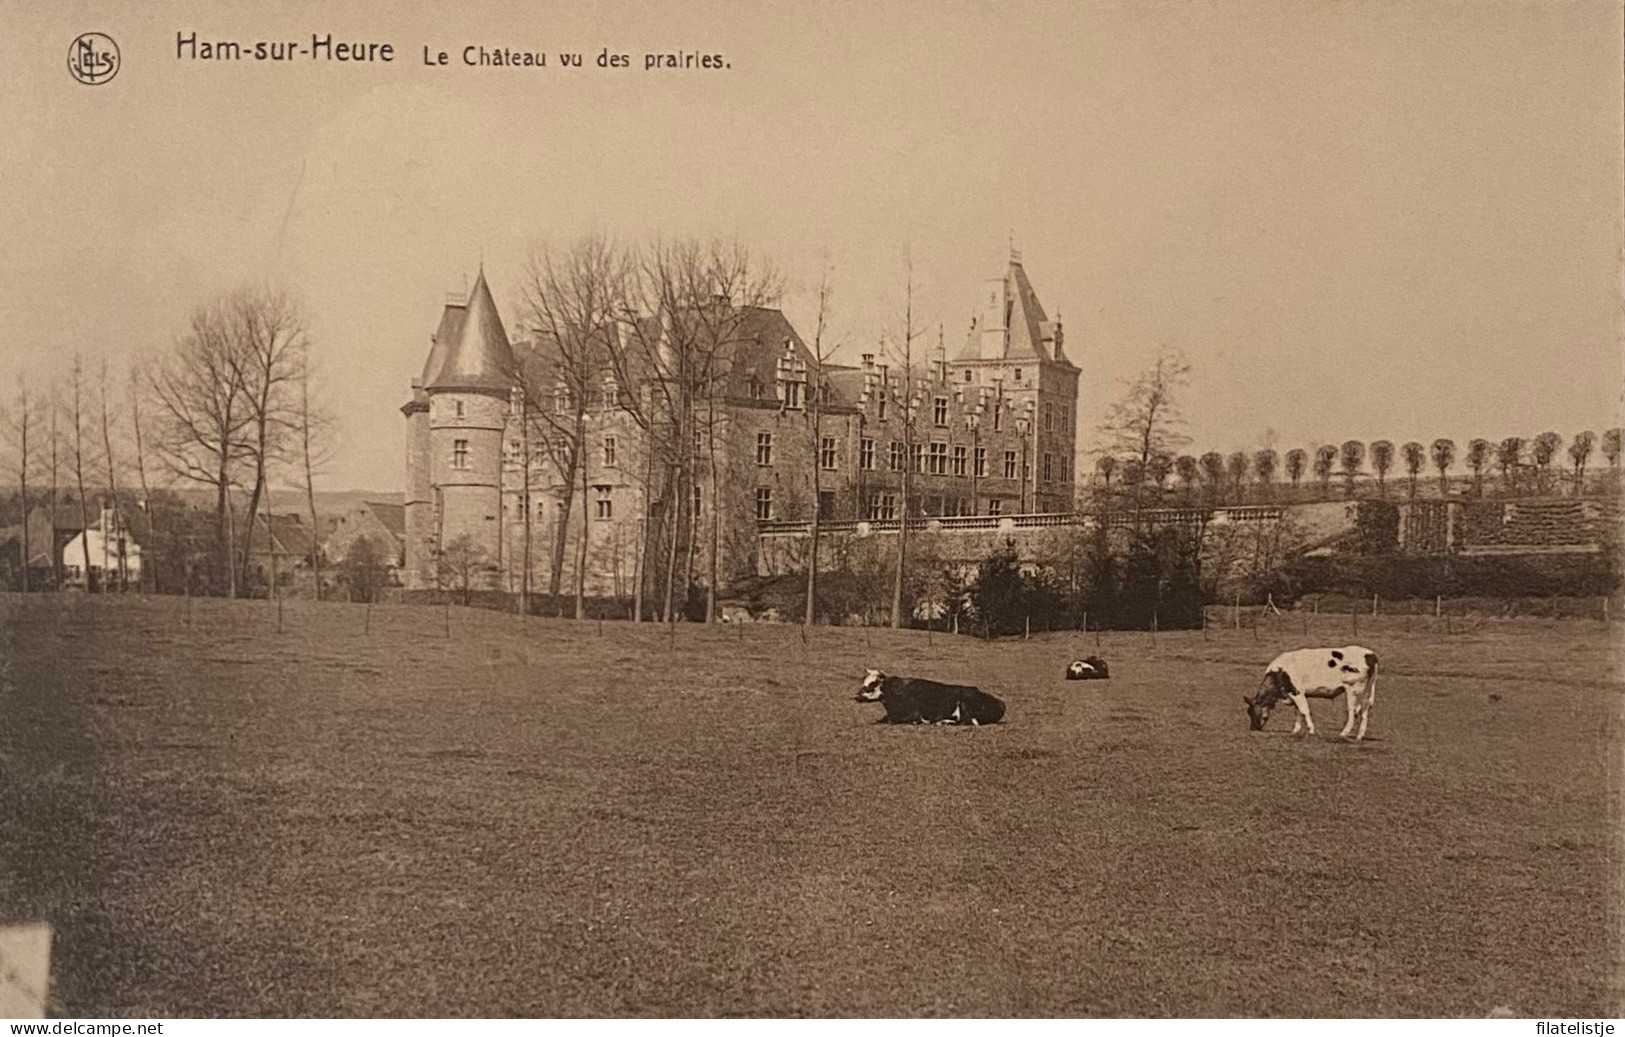 Han Sur Heure Le Chateau Vu Des Prairies - Ham-sur-Heure-Nalinnes